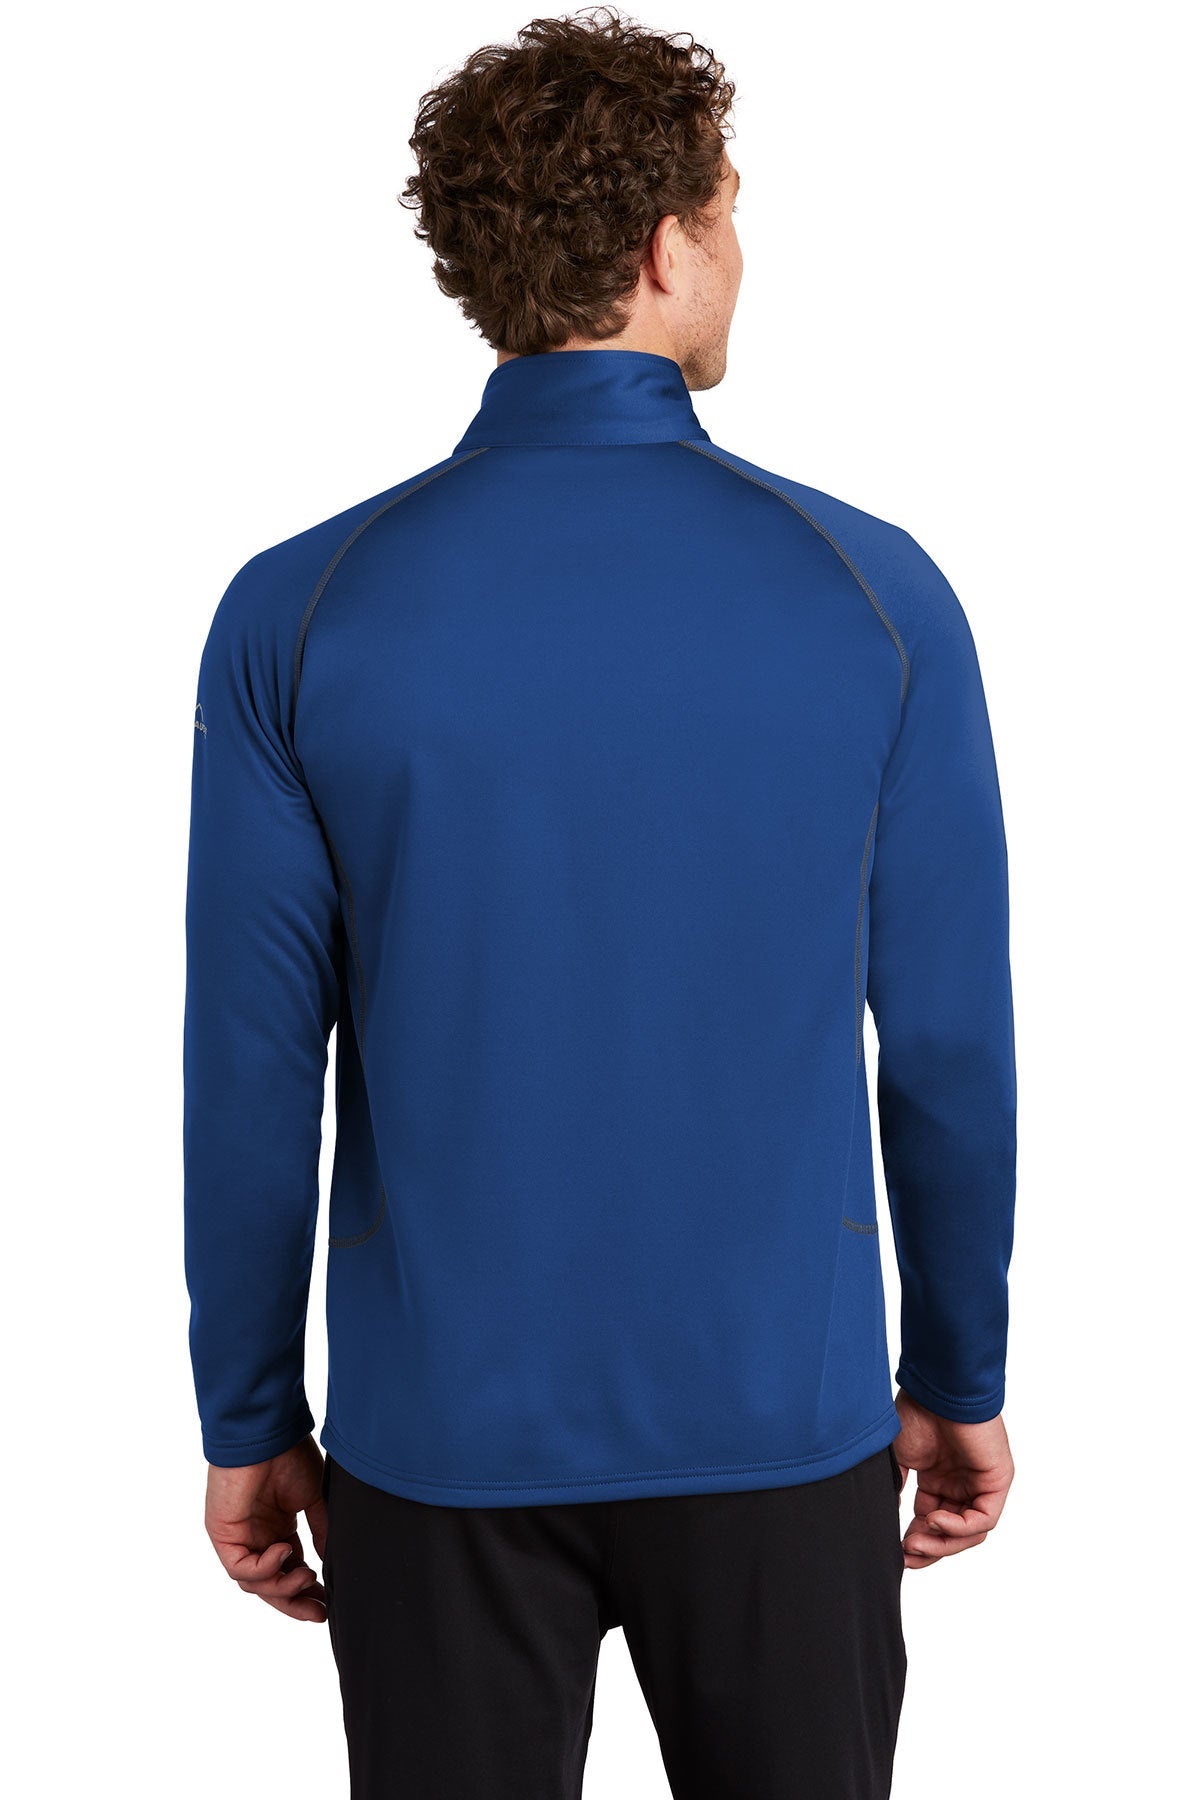 Eddie Bauer Smooth Fleece Custom Layer Jackets, Cobalt Blue